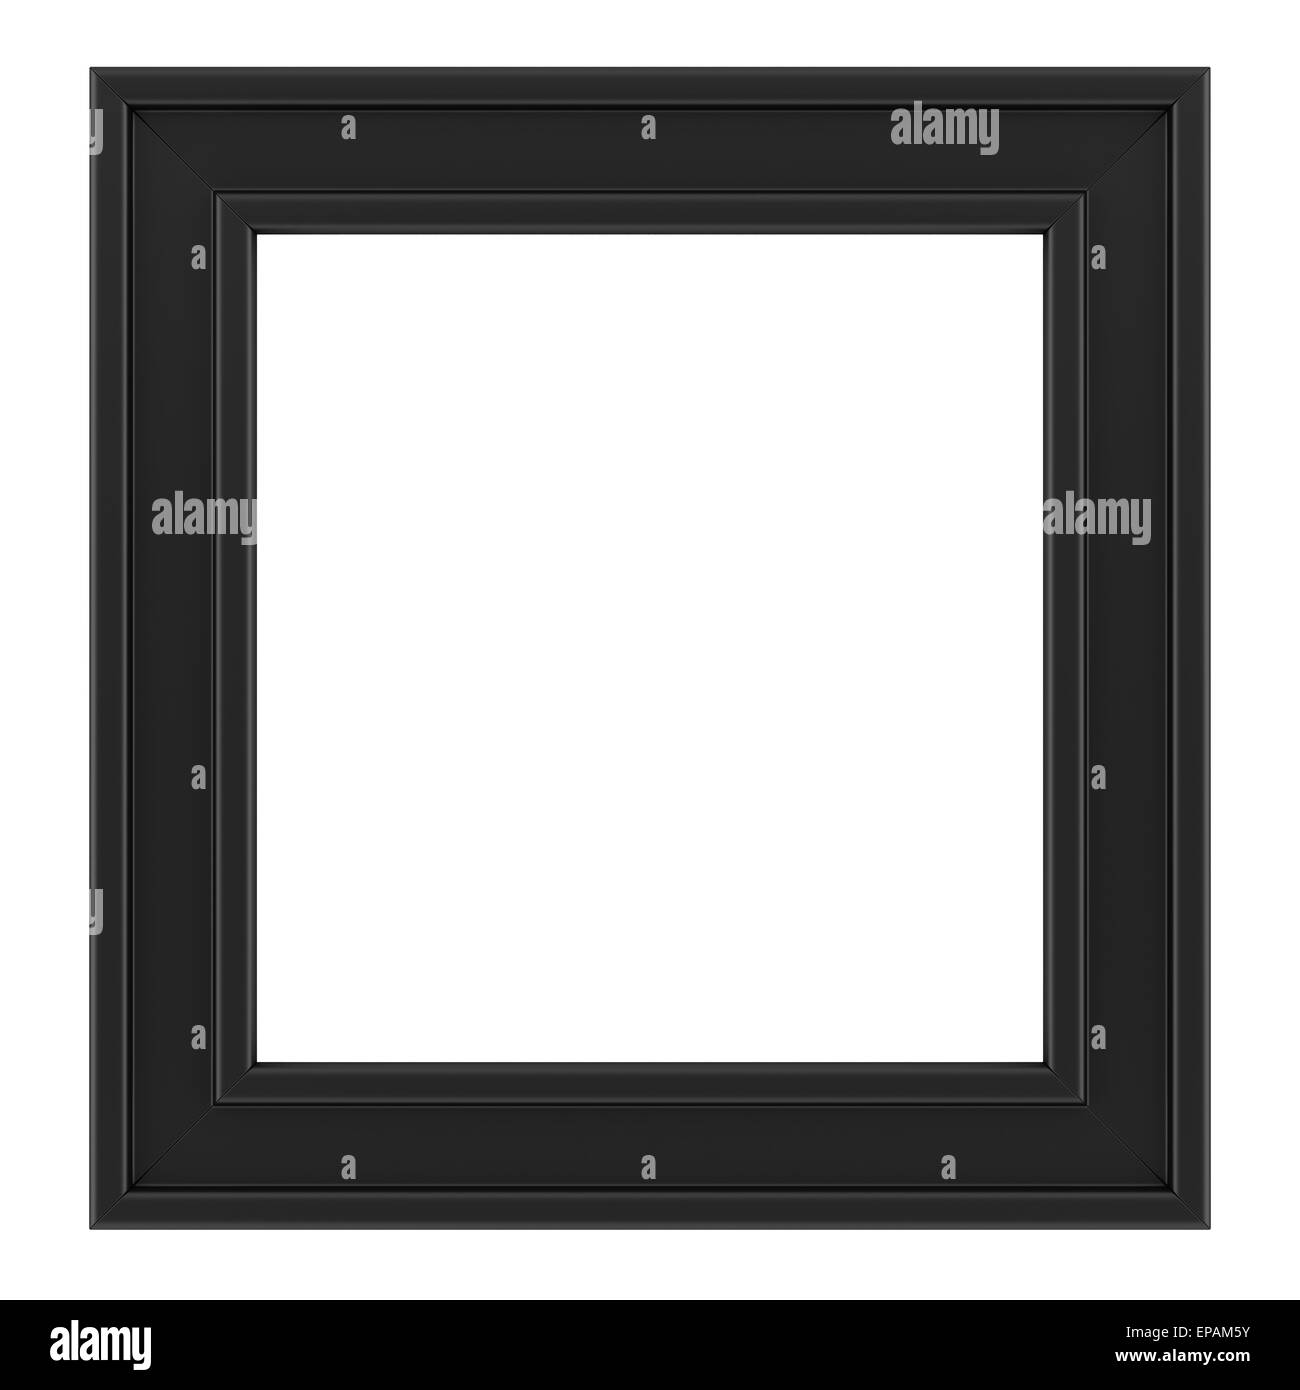 black frame isolated on white background Stock Photo